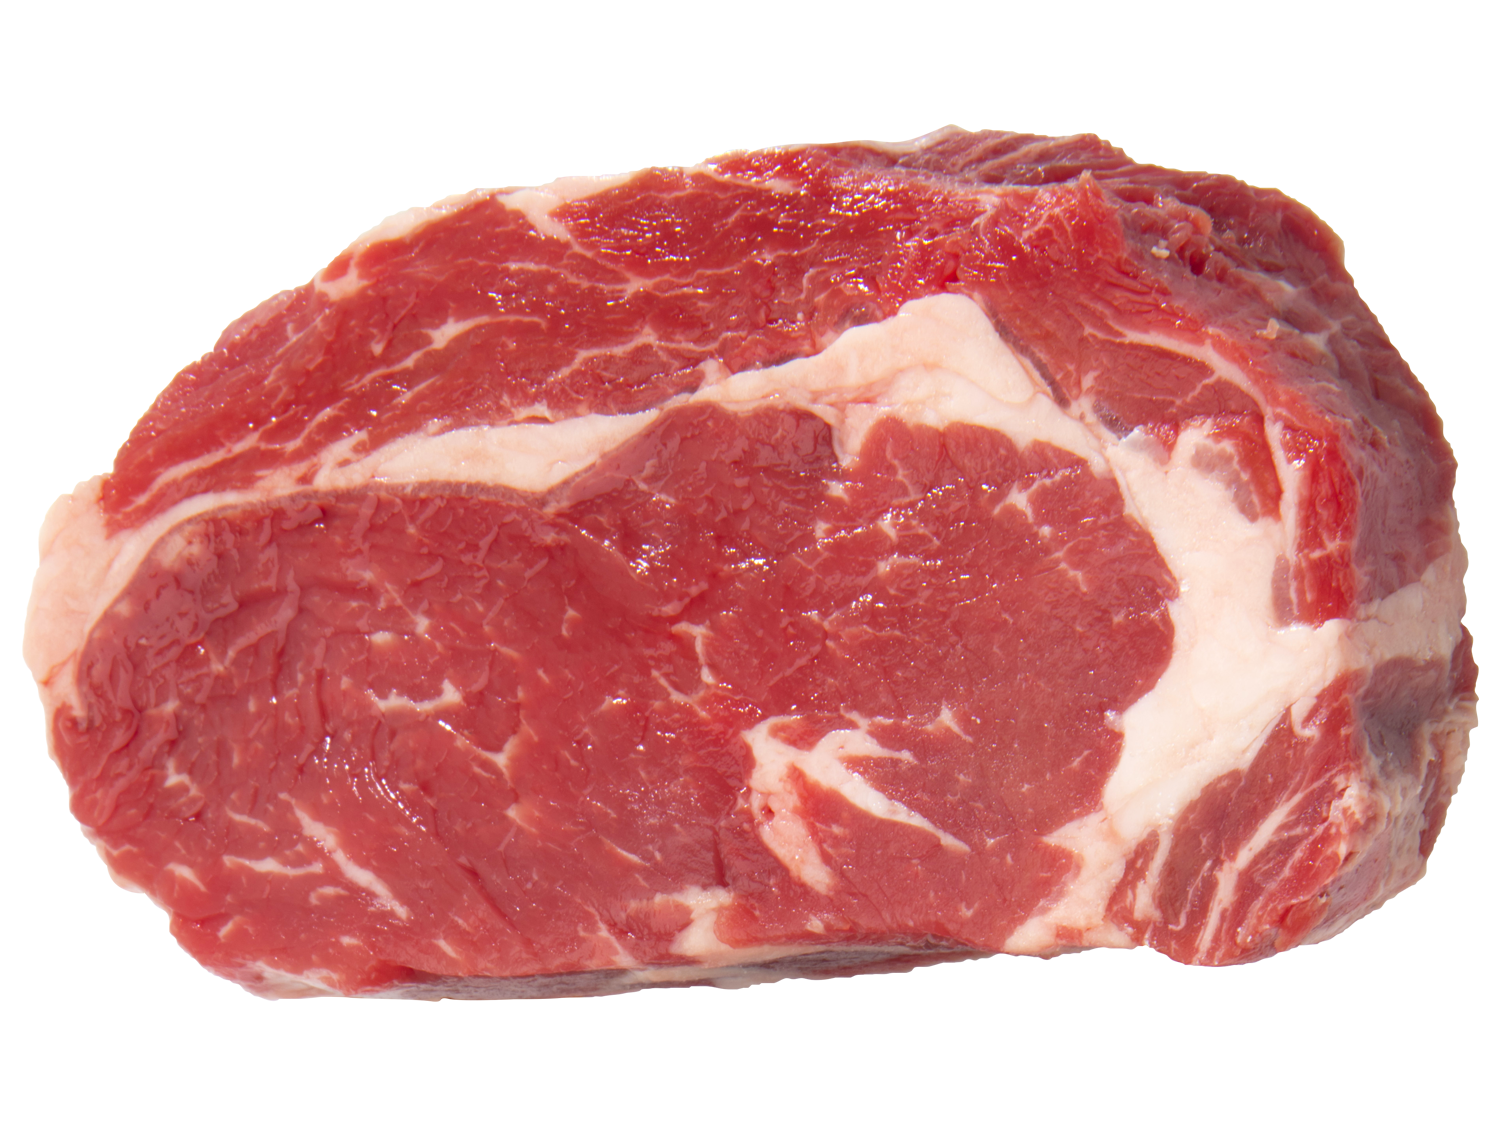 Mięso wołowe